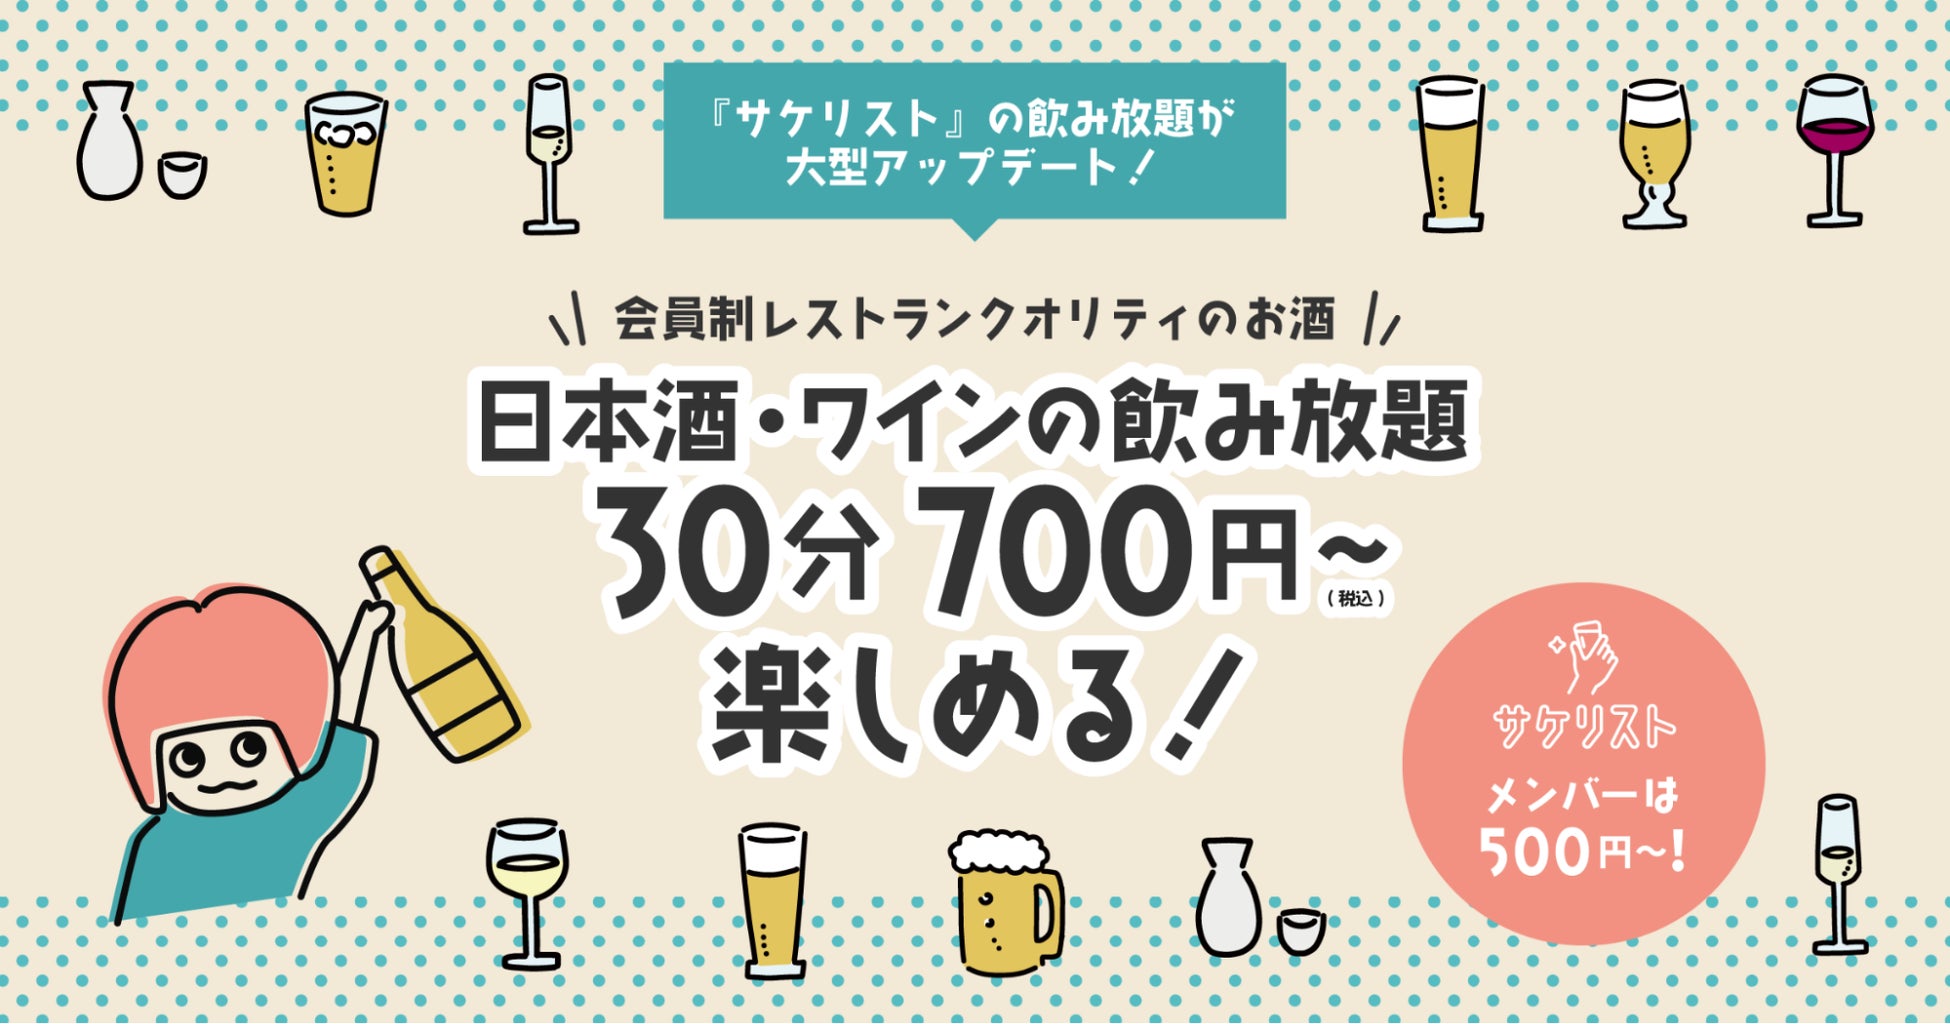 30分700円で日本酒・ワインが飲み放題！サケリスト、10/20より新メニューを提供開始